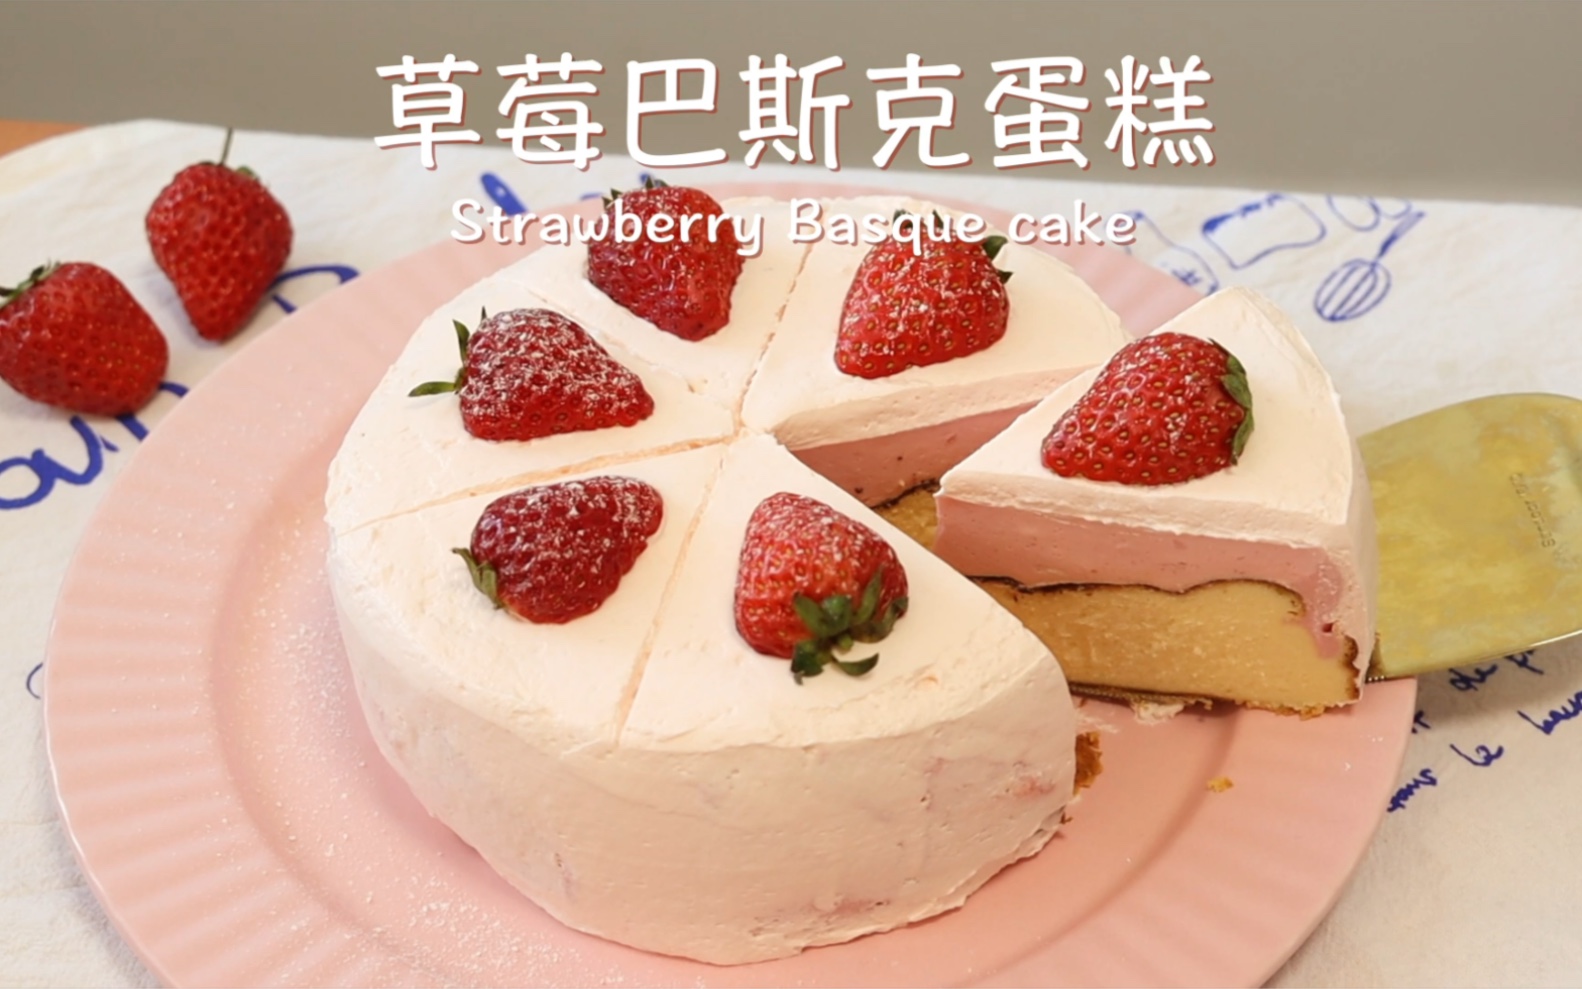 草莓控不能错过的草莓巴斯克蛋糕🍓口感丰富